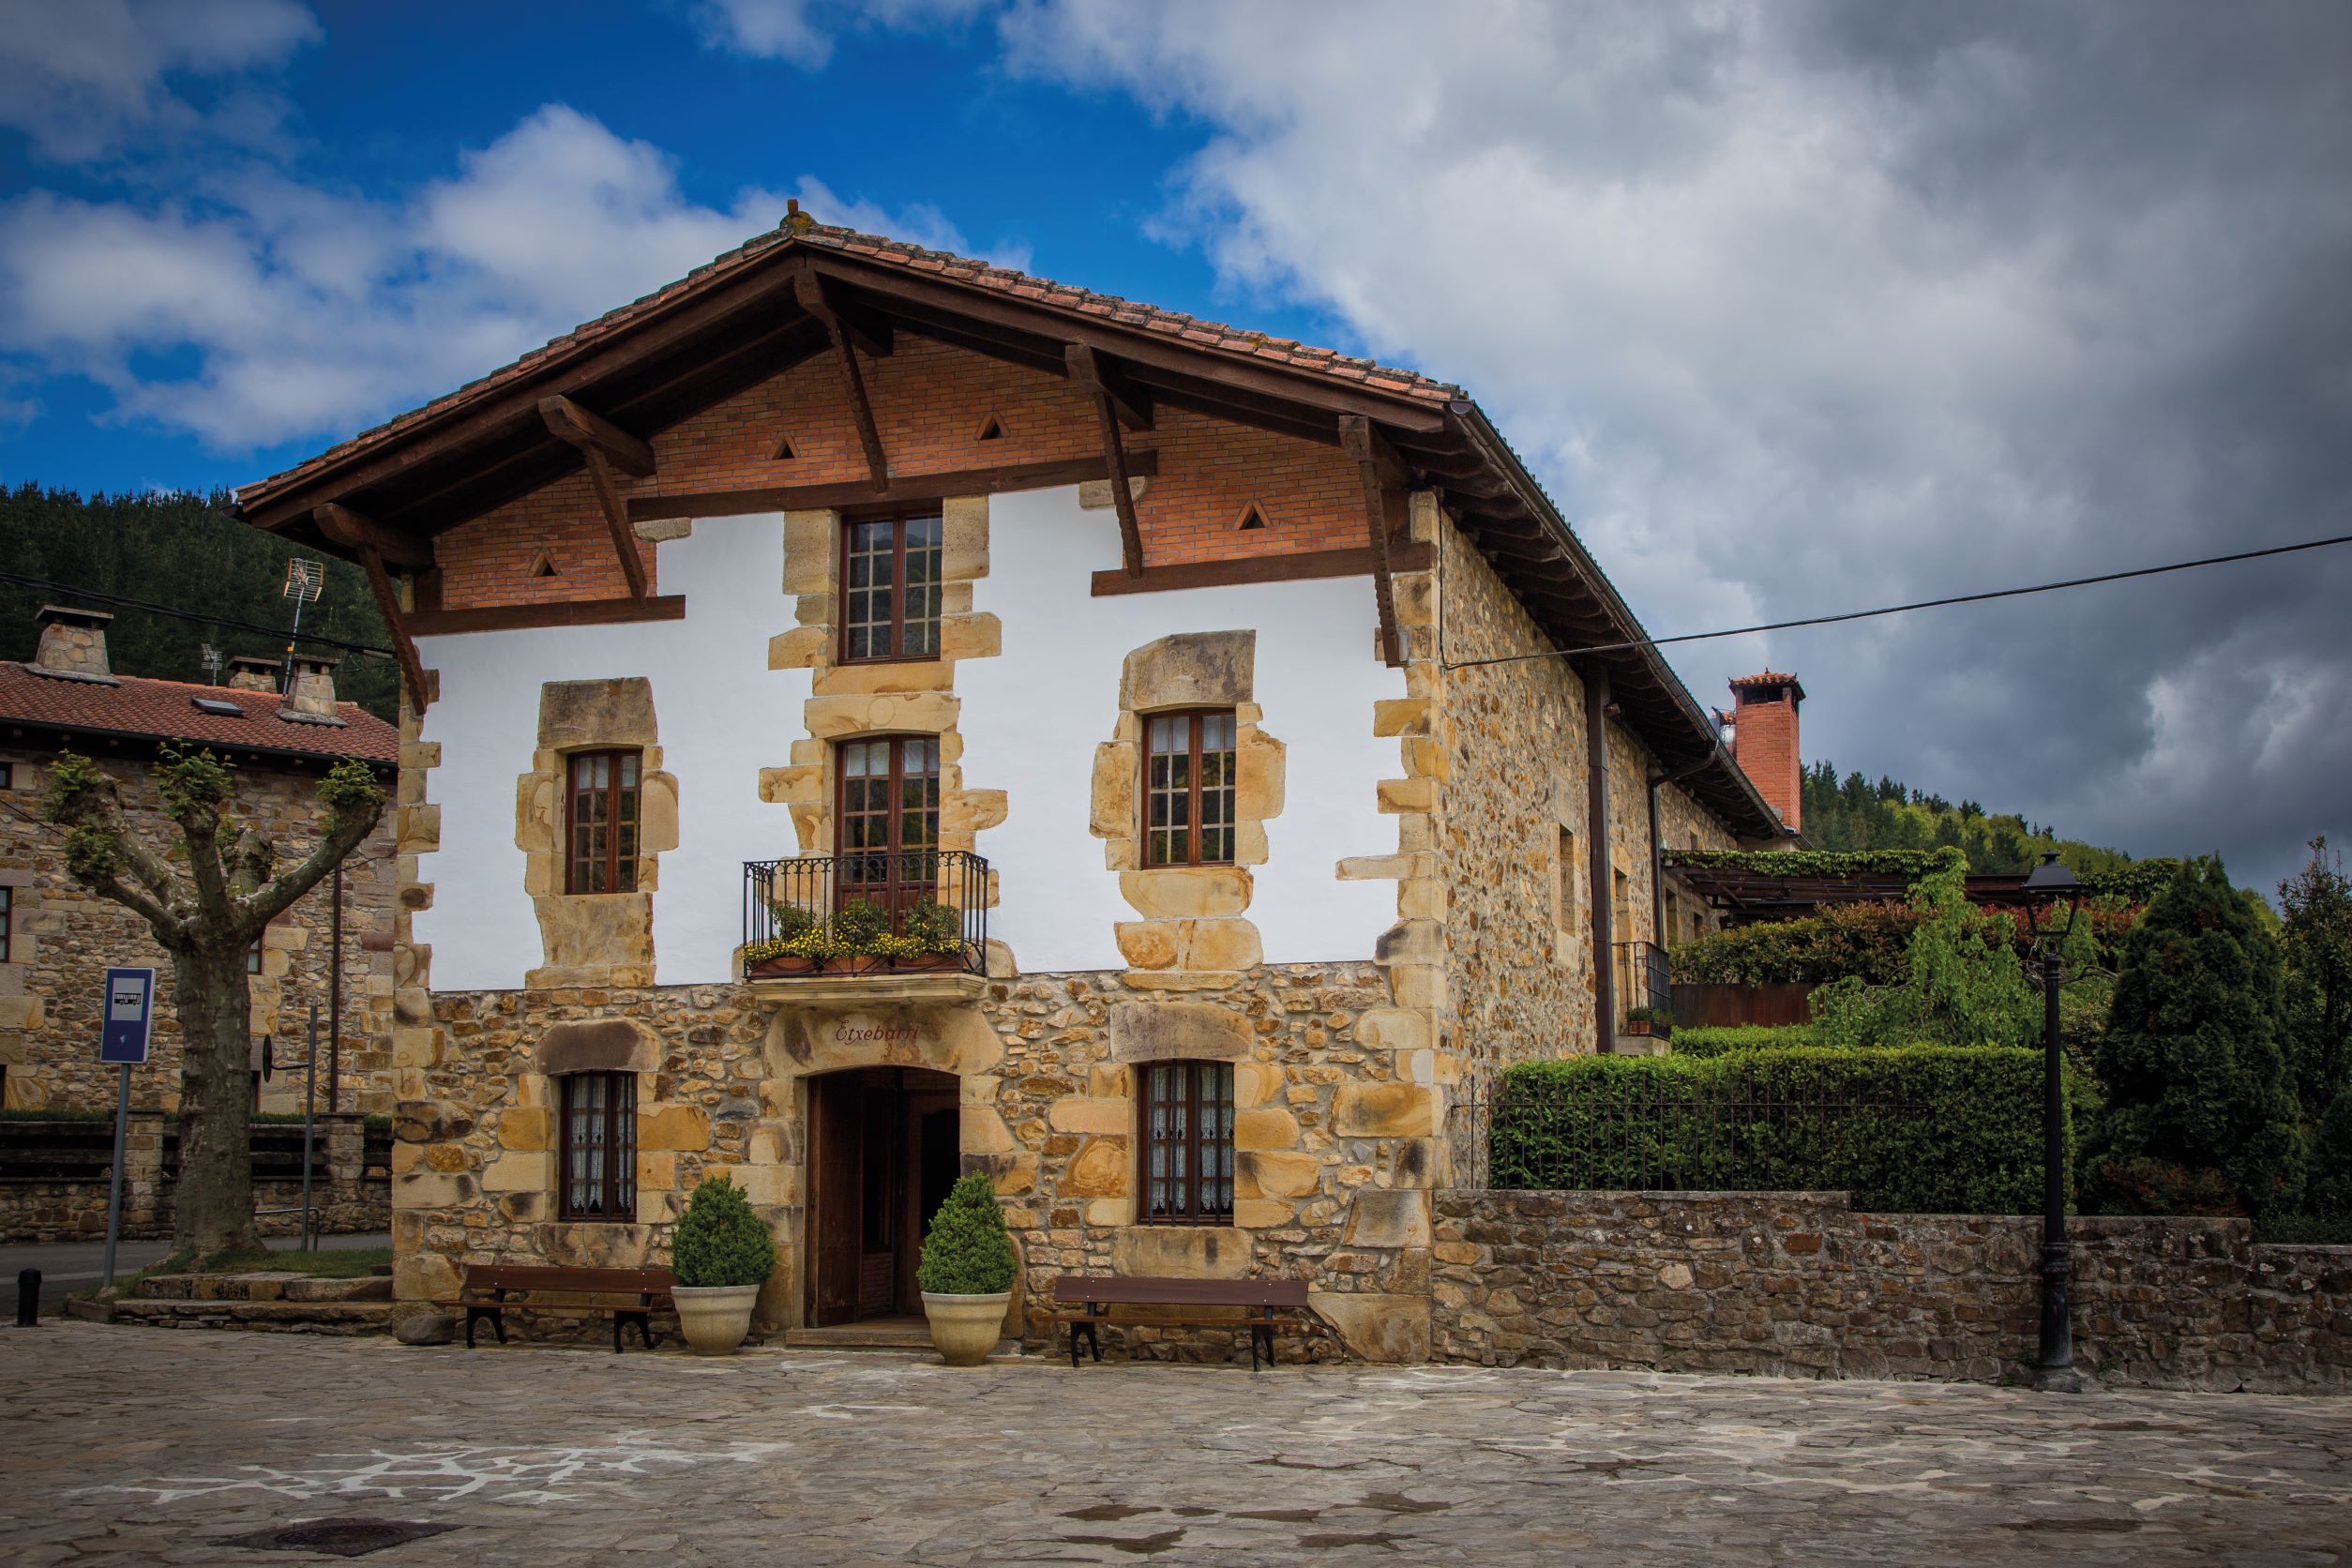 由保留當地傳統建築特色的百年石頭老屋改建而成的 Asador Etxebarri。